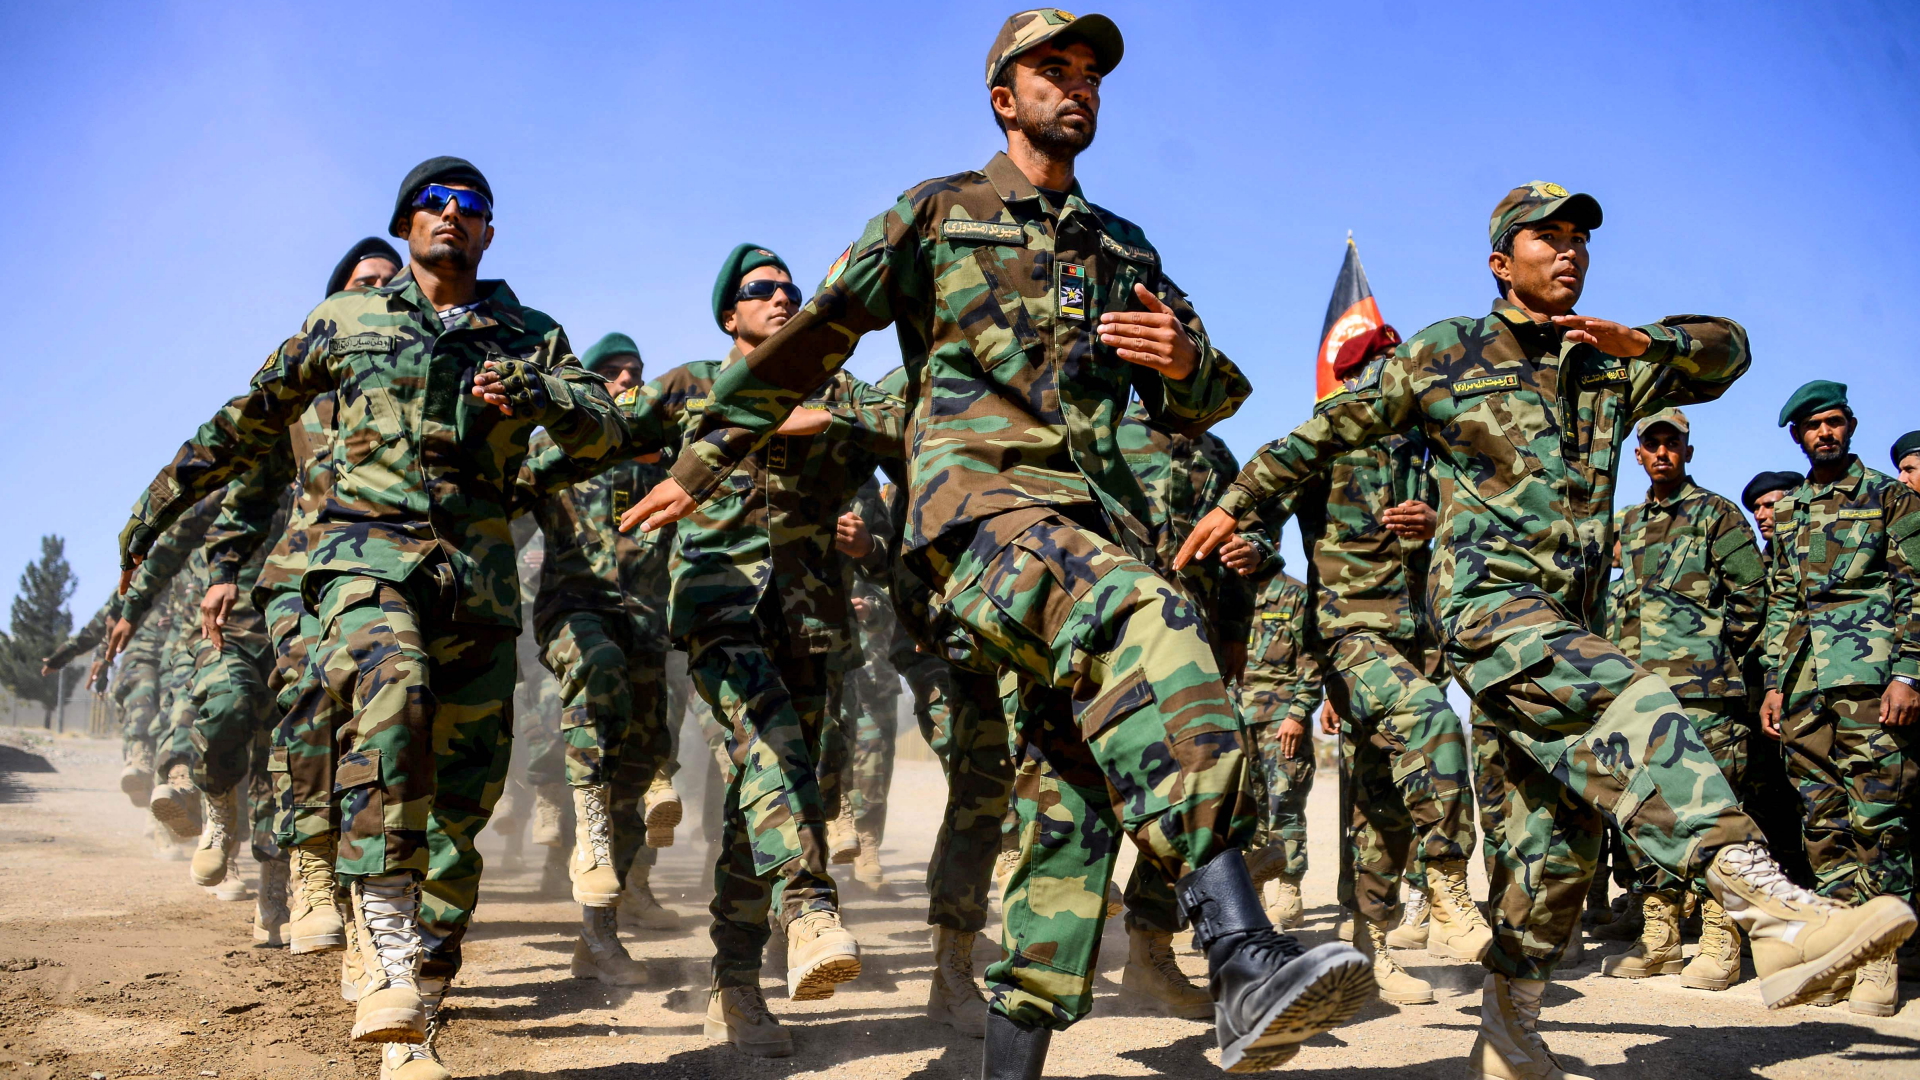 Soldaten der afghanischen Armee marschieren bei einer Zeremonie in der Provinz Herat im Oktober 2020 | AFP